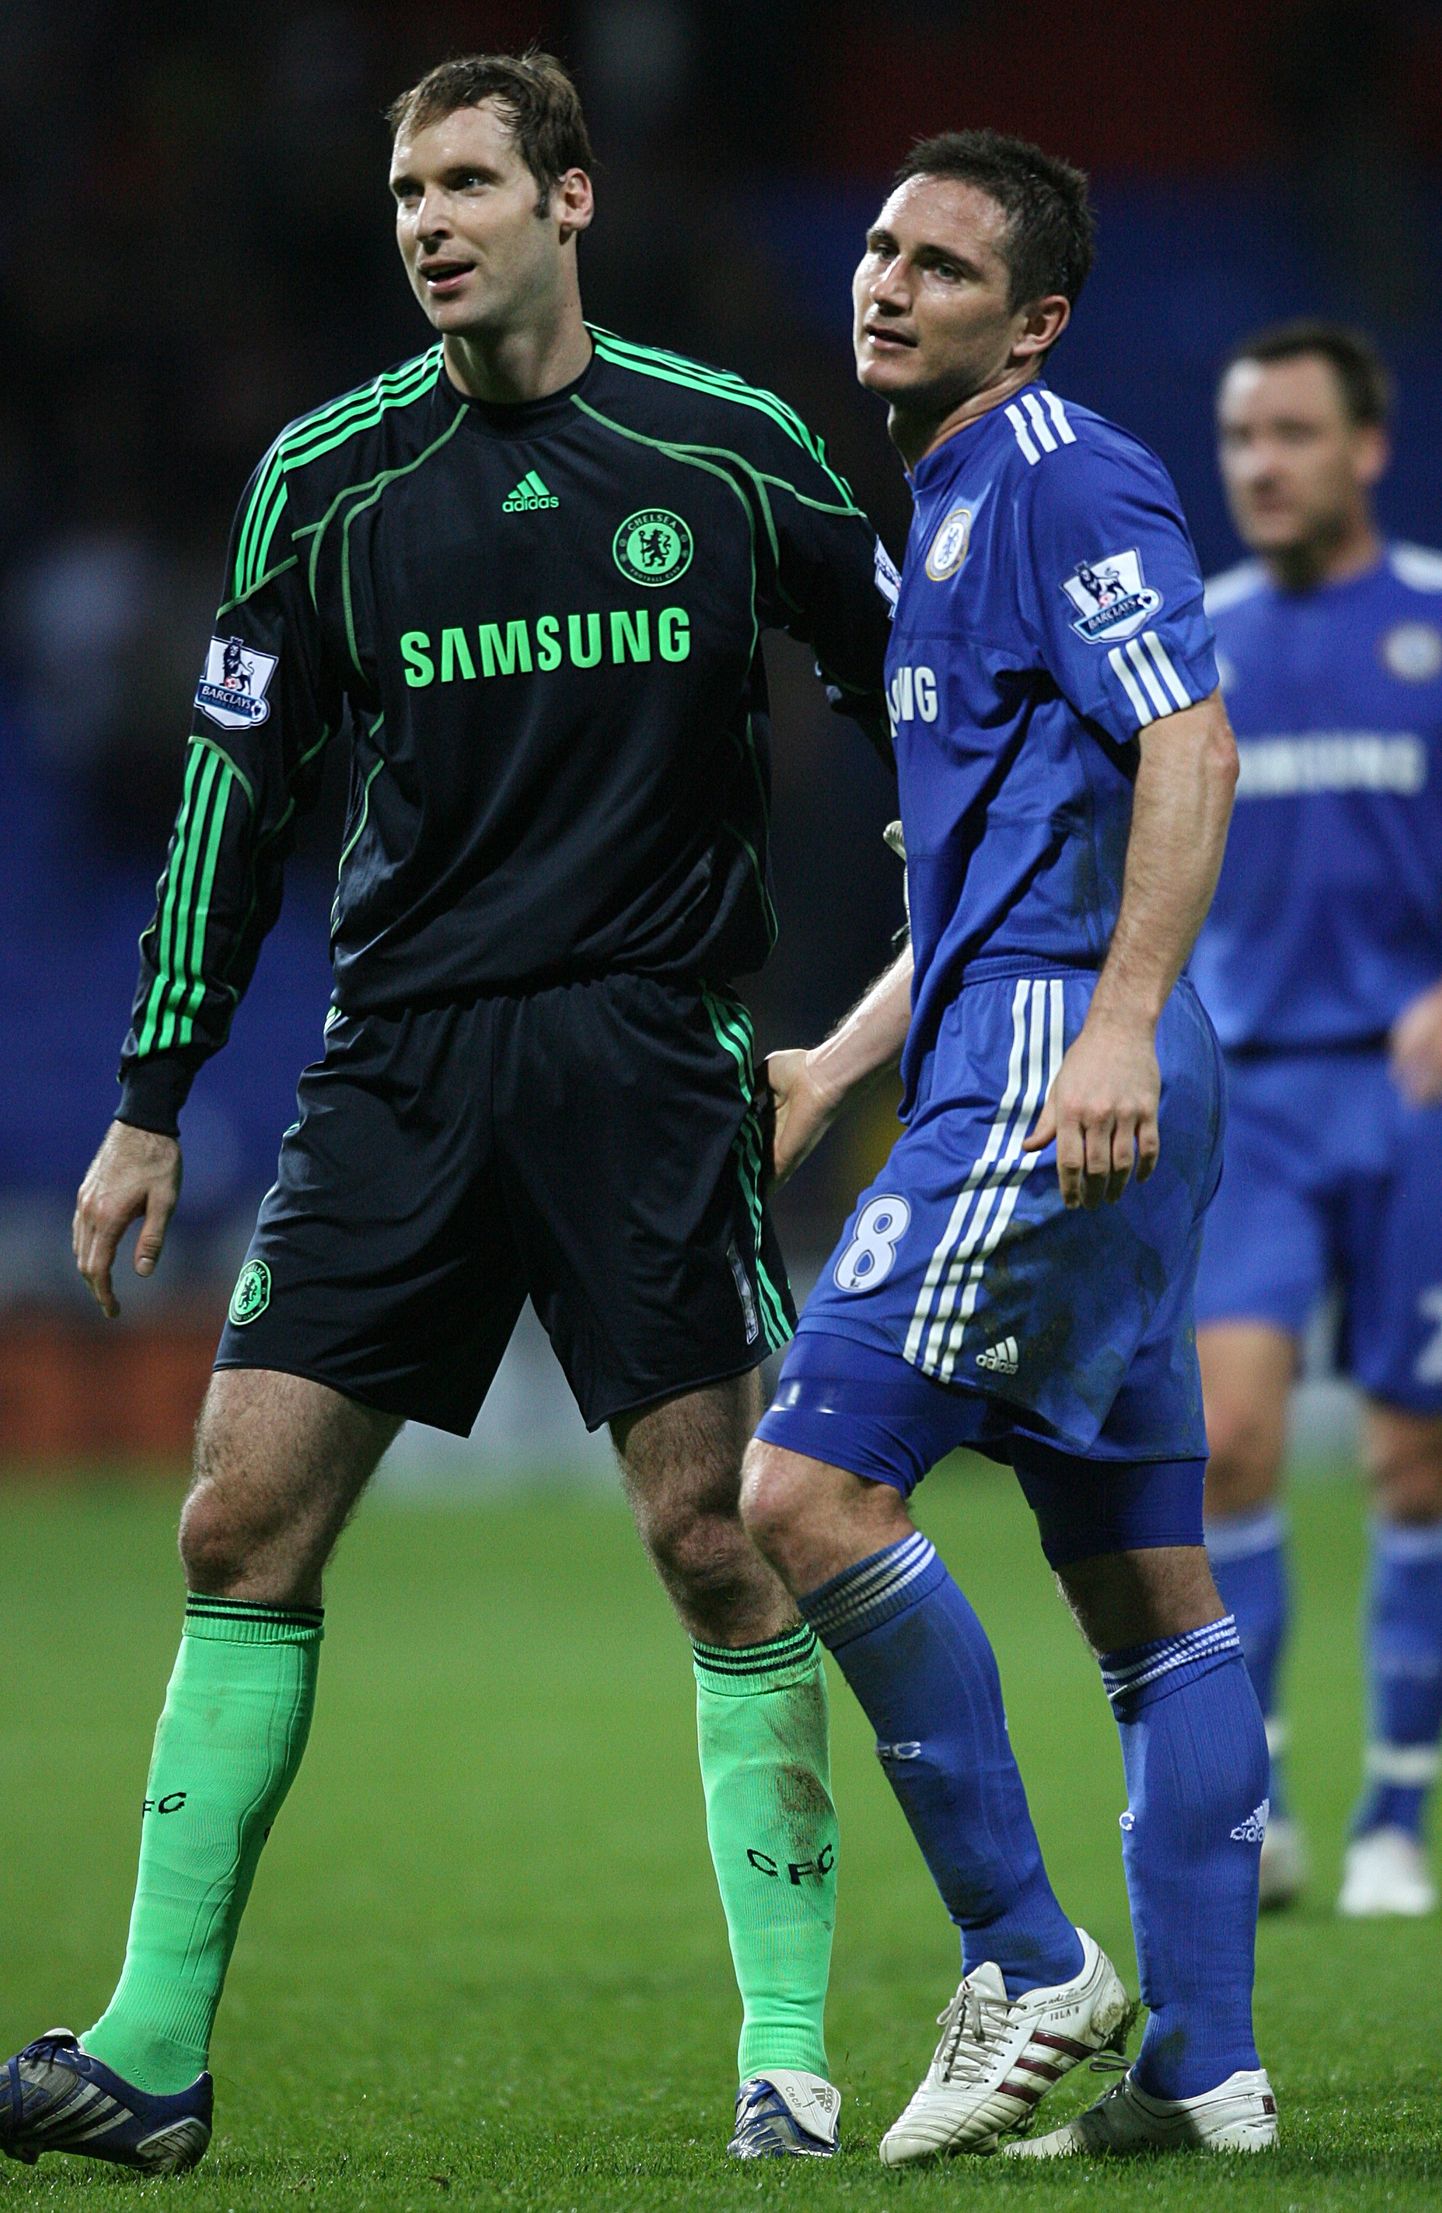 Chelsea legendid Petr Cech ja Frank Lampard võivad varsti jälle koostööd teha.